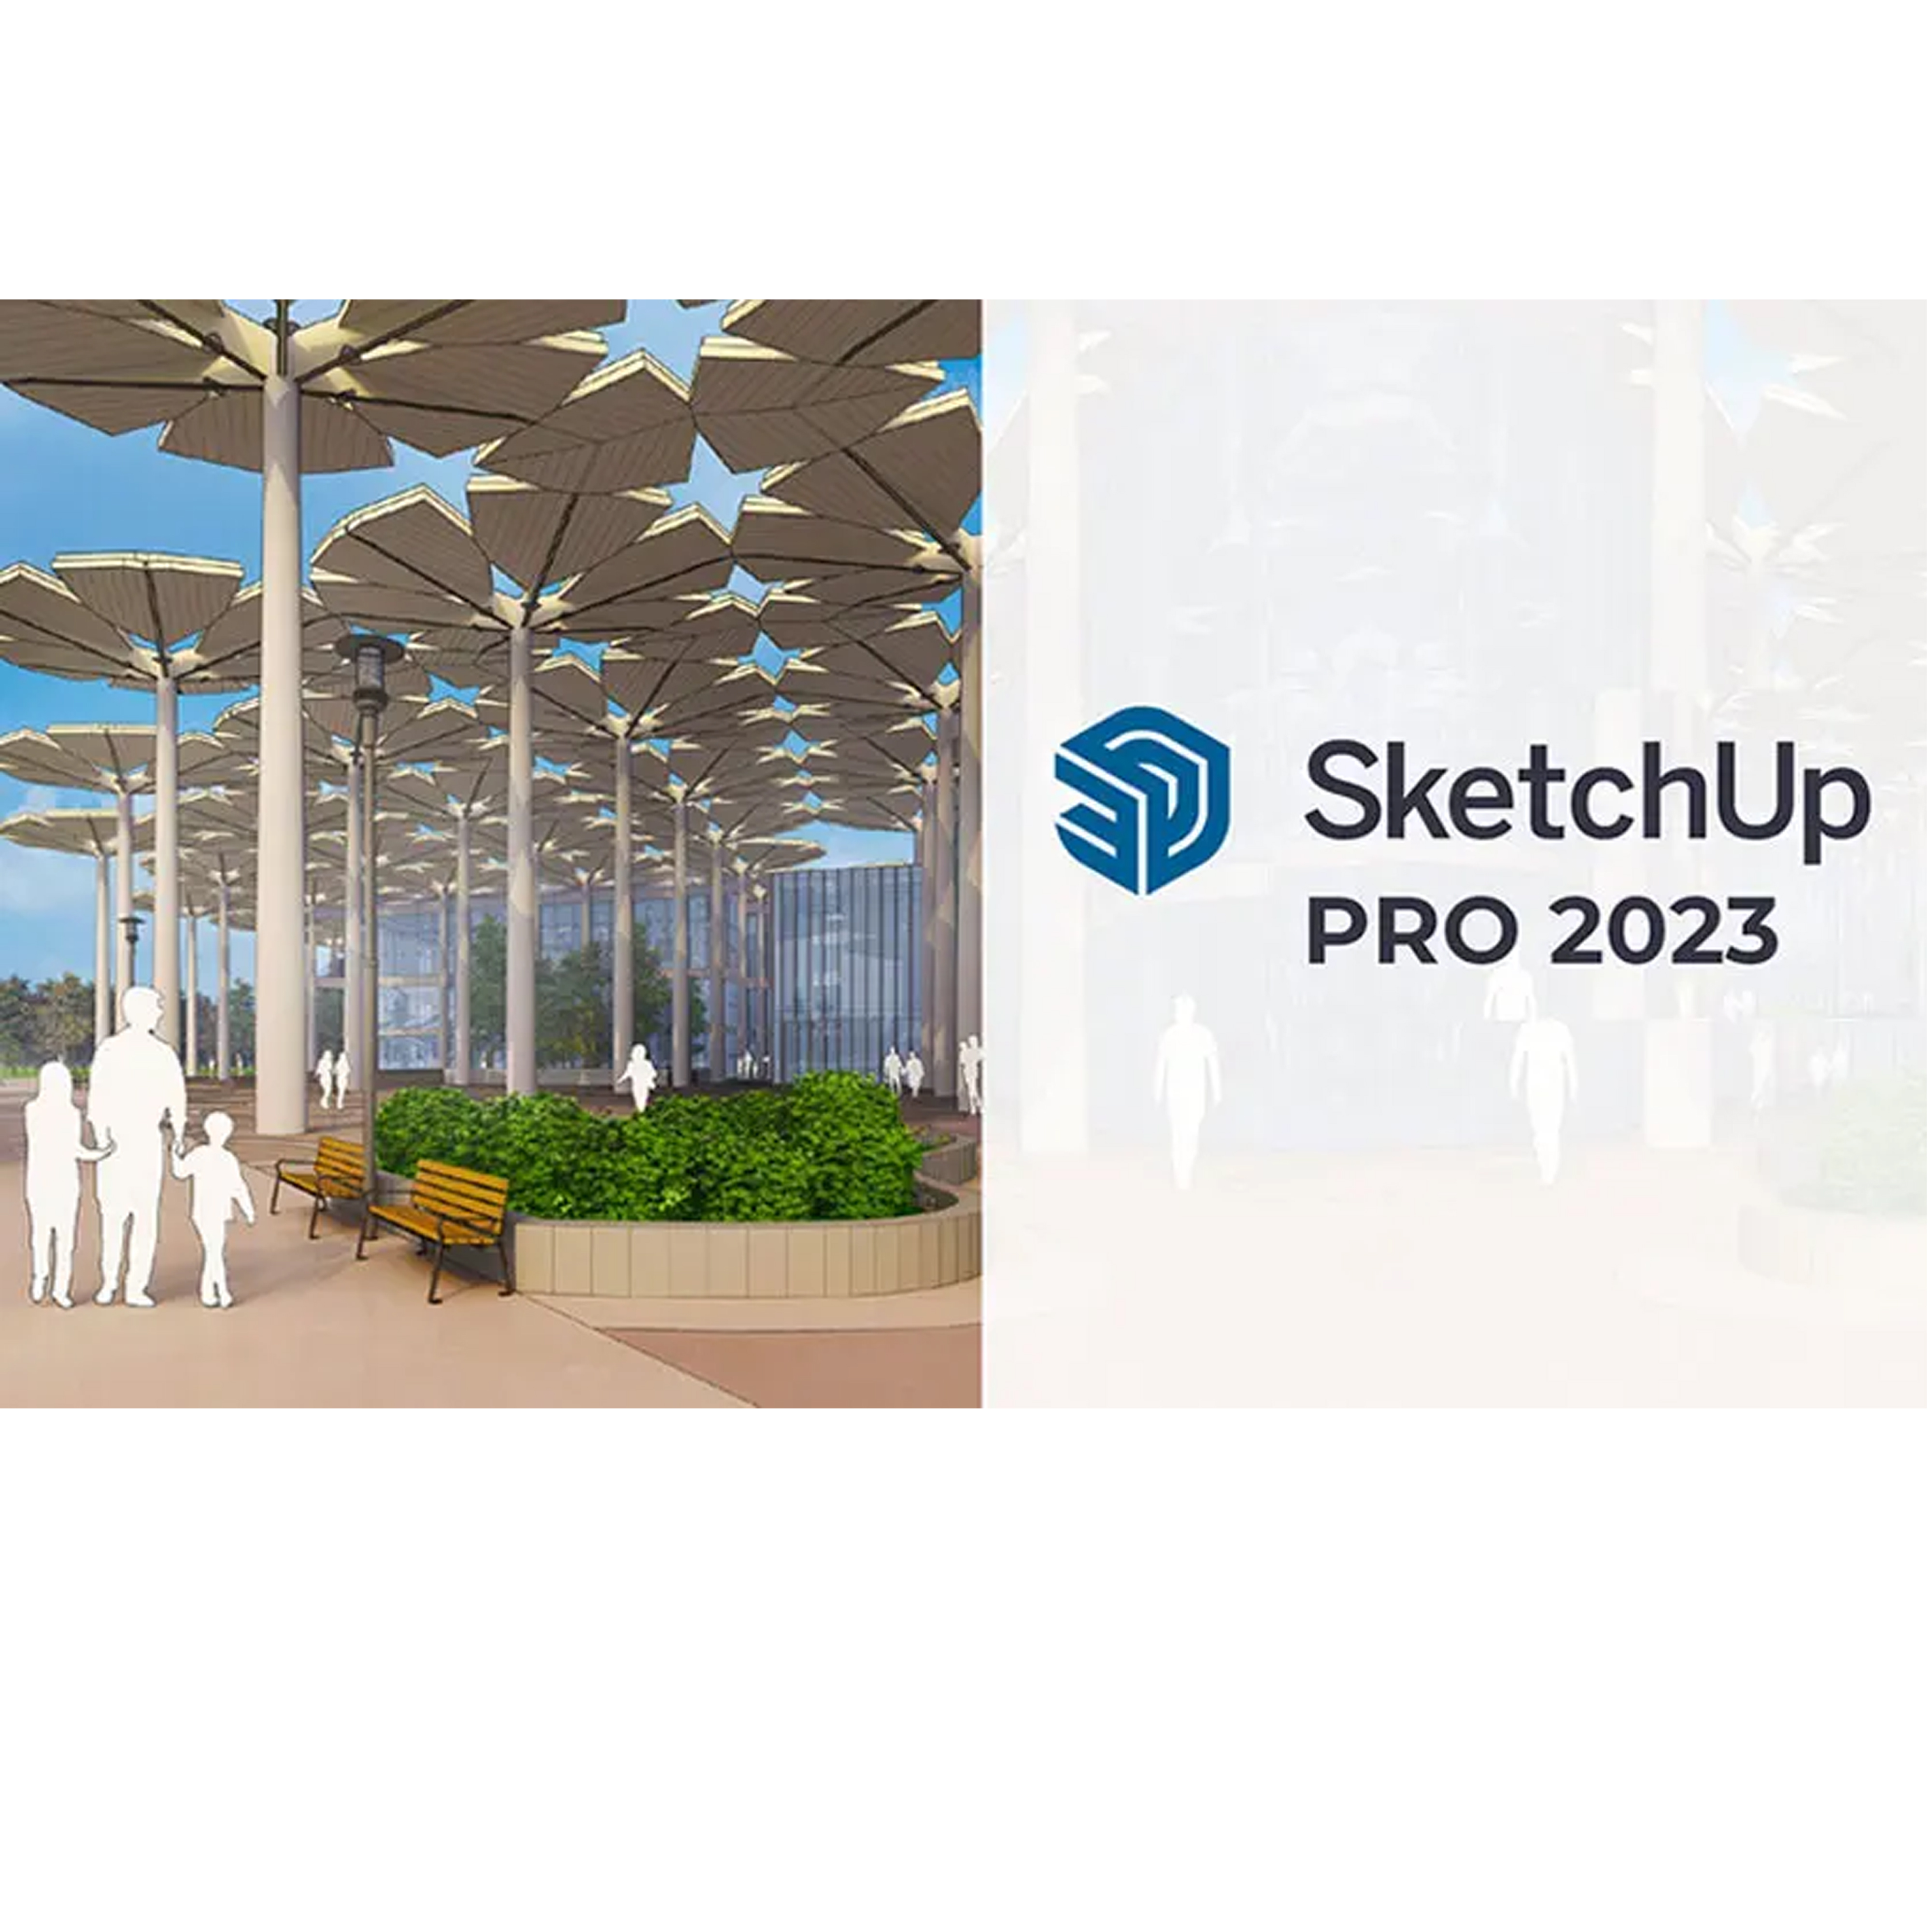 SketchUp Pro 2023 Multilililoilal 64bit